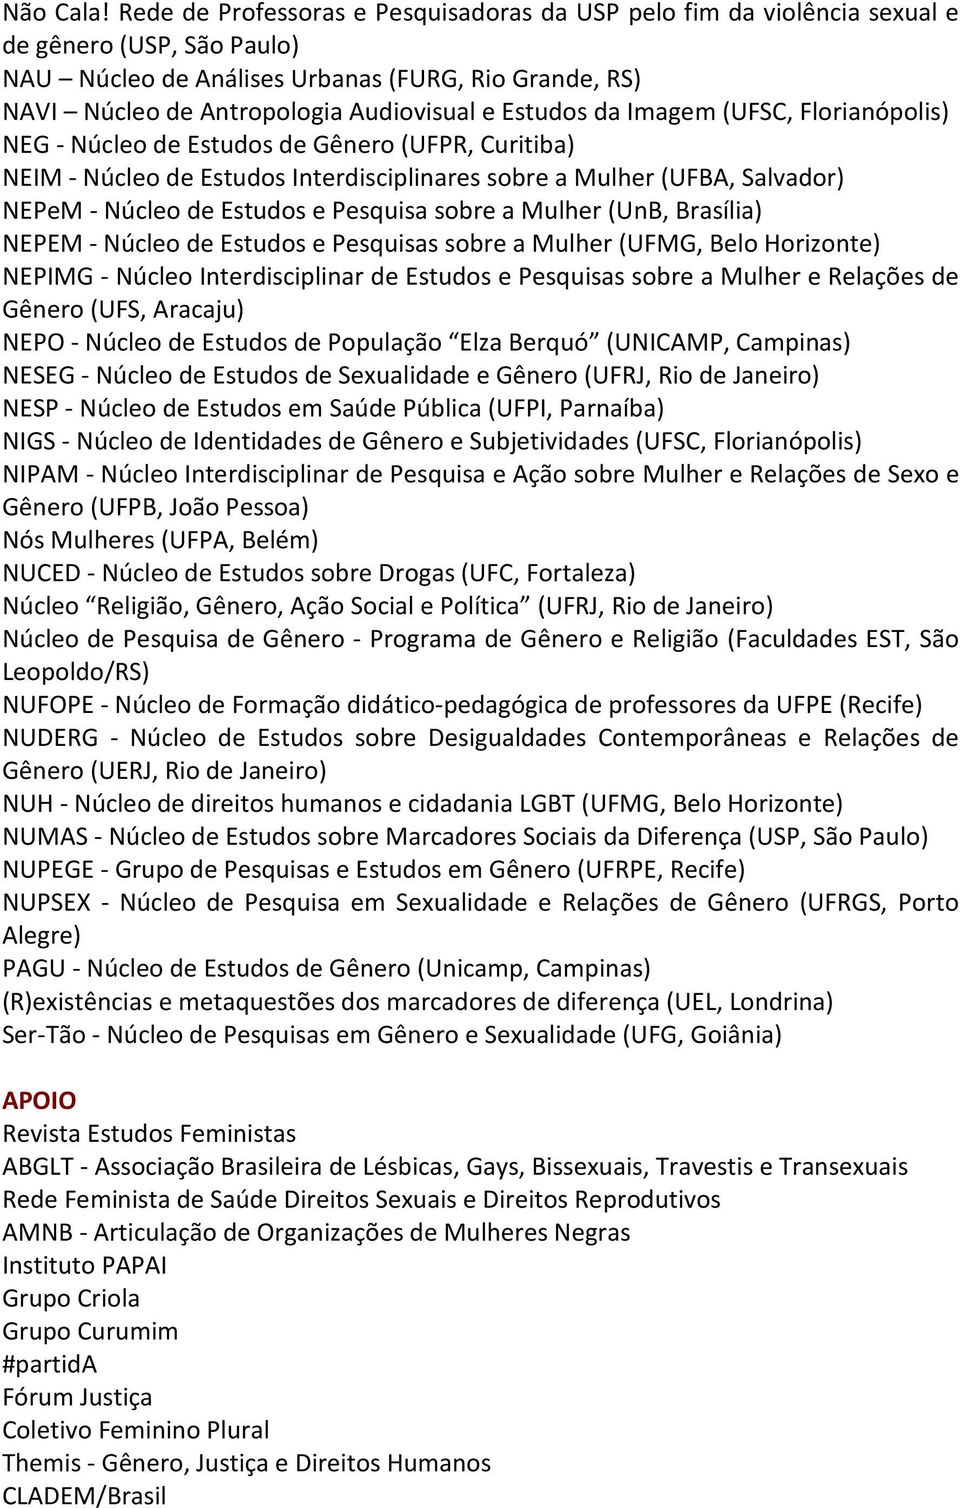 Estudos da Imagem (UFSC, Florianópolis) NEG - Núcleo de Estudos de Gênero (UFPR, Curitiba) NEIM - Núcleo de Estudos Interdisciplinares sobre a Mulher (UFBA, Salvador) NEPeM - Núcleo de Estudos e